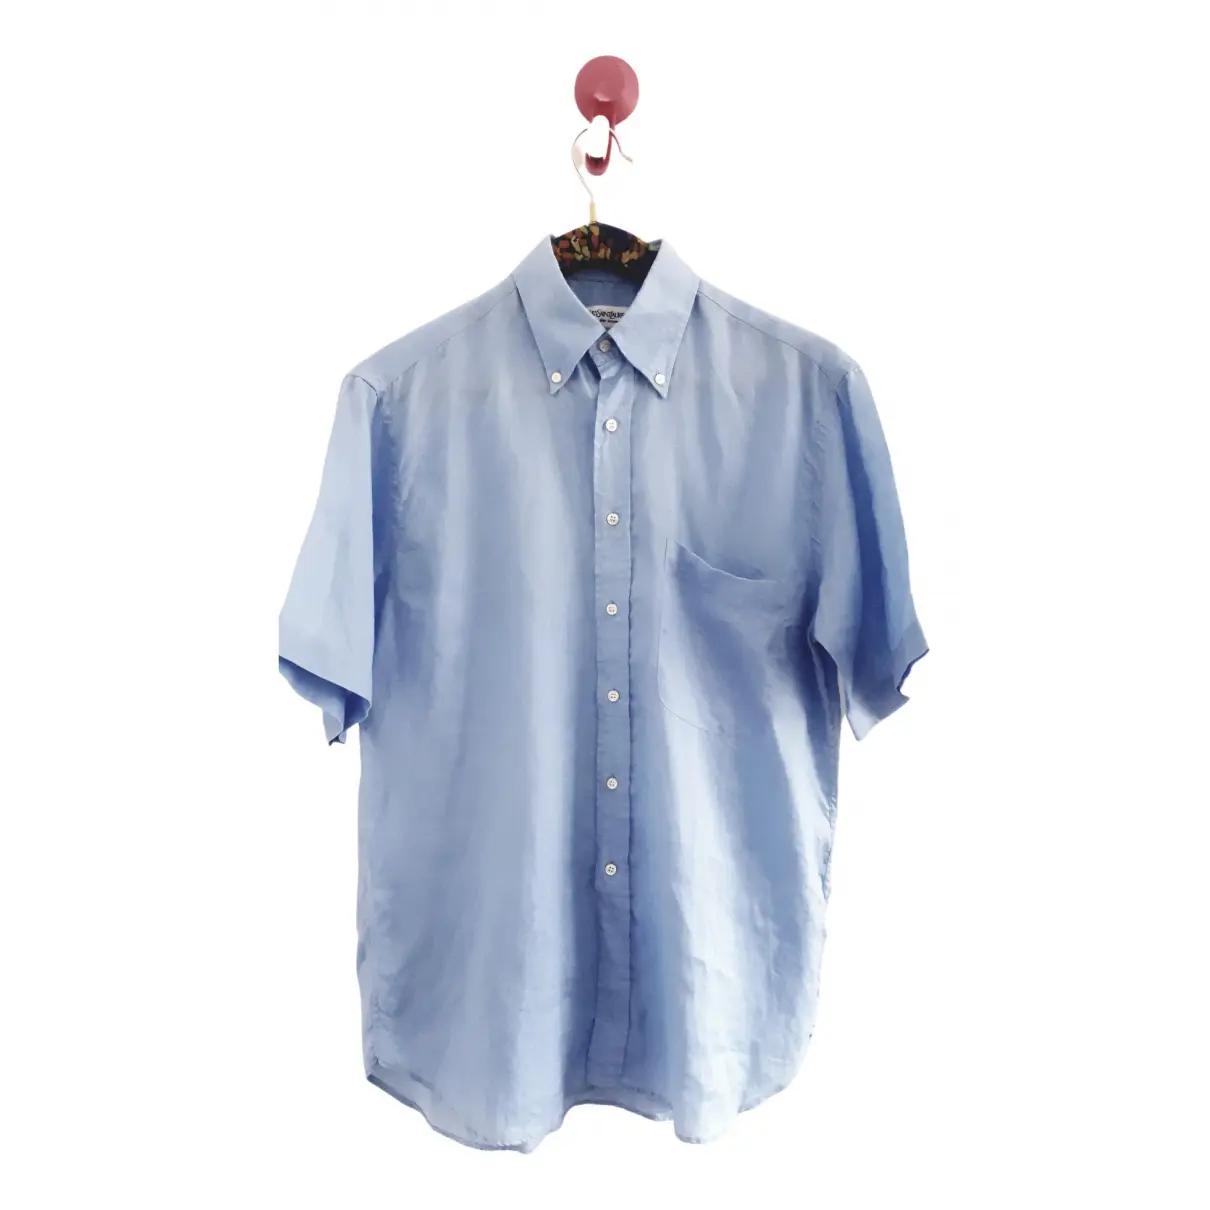 Linen shirt Yves Saint Laurent - Vintage